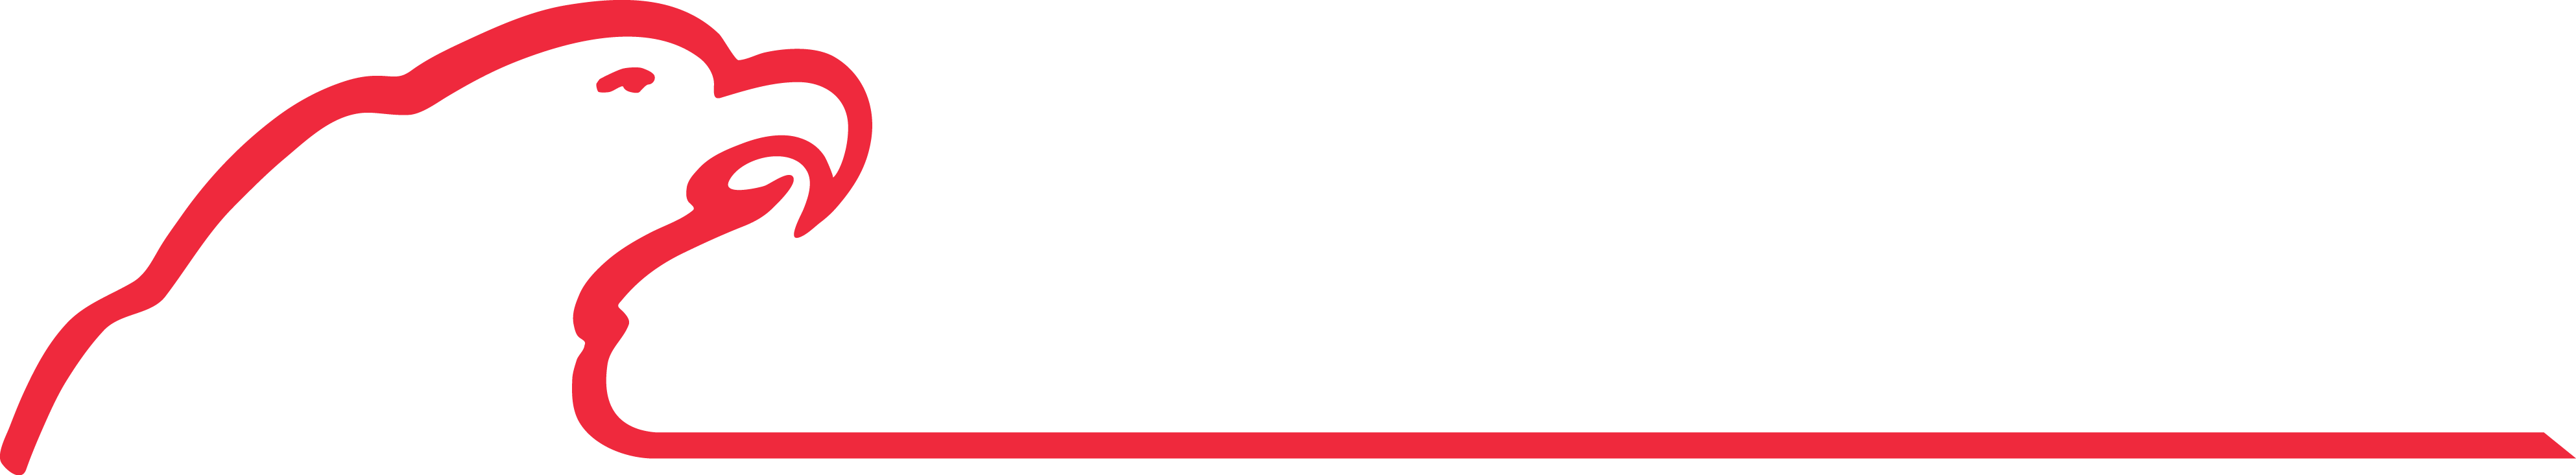 Jim Hawk Truck Trailers